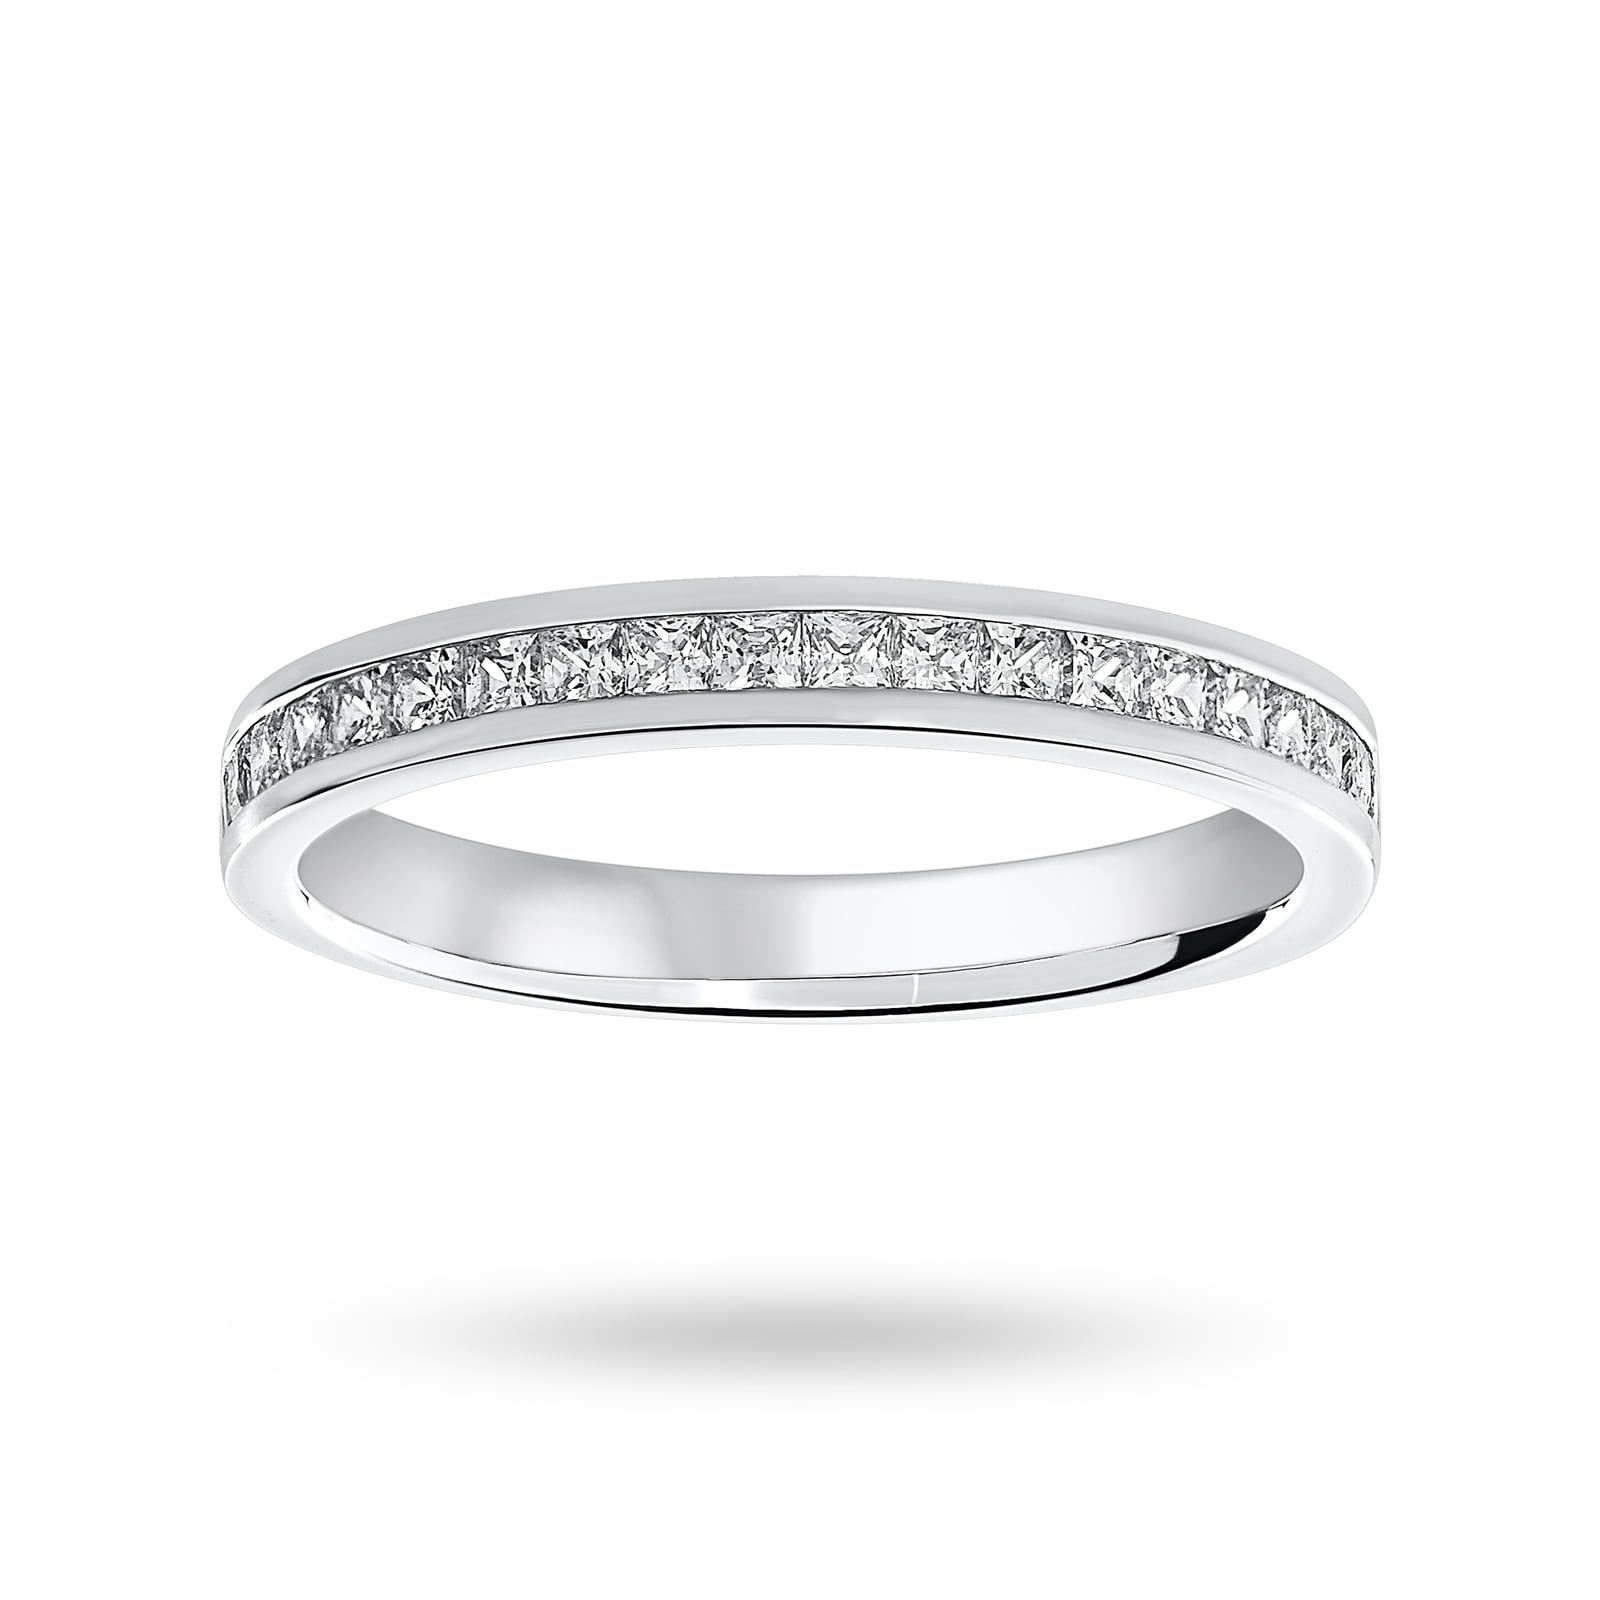 18 Carat White Gold 0.50 Carat Princess Cut Half Eternity Ring - Ring Size J